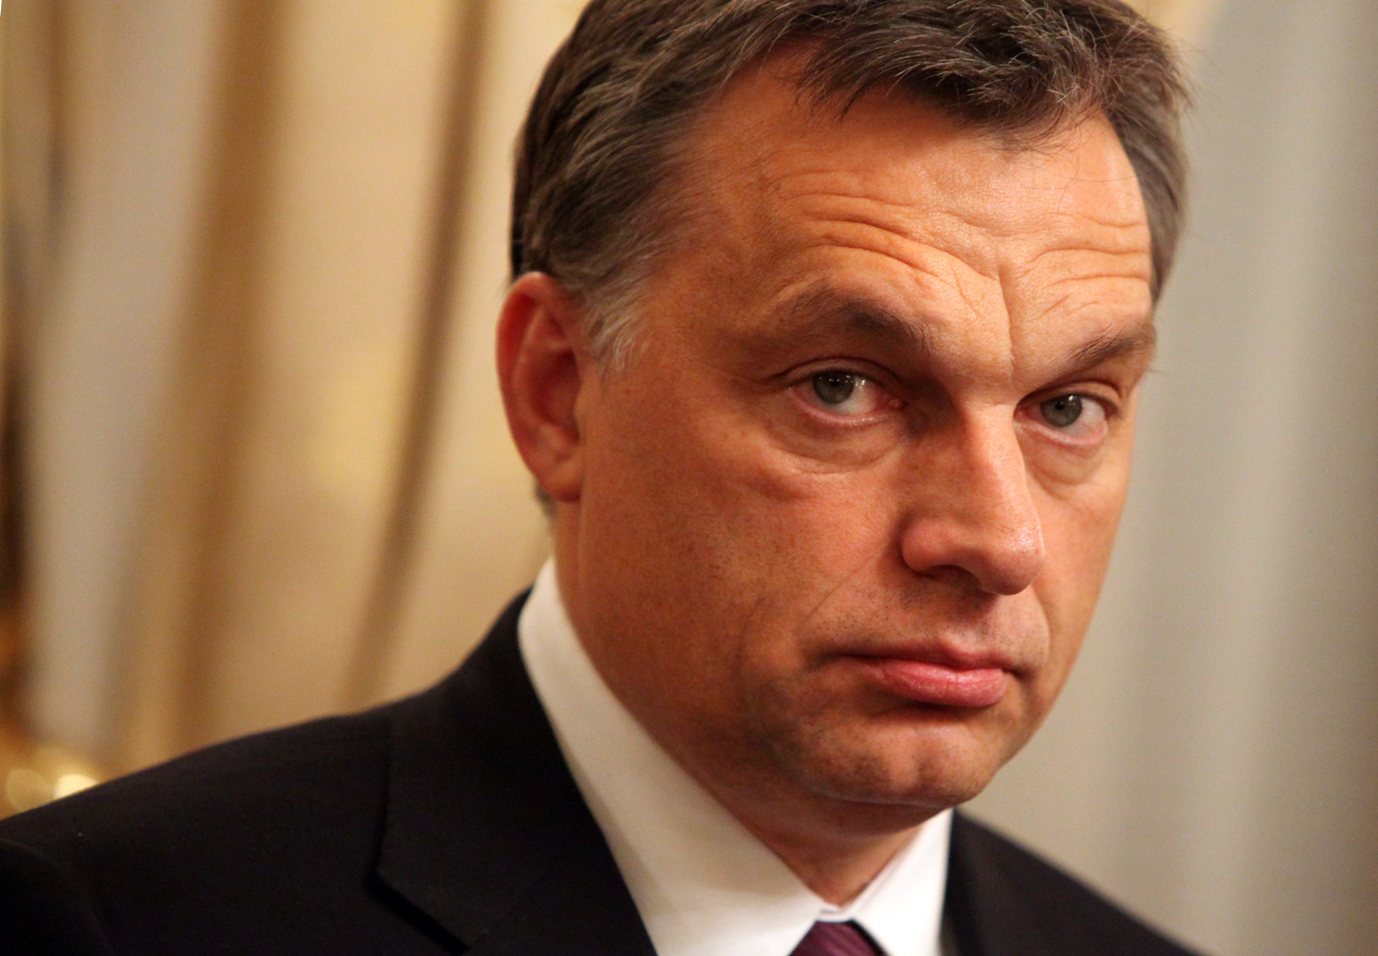 Emlékmű - Orbán: erkölcsi kötelesség emléket állítani az áldozatoknak